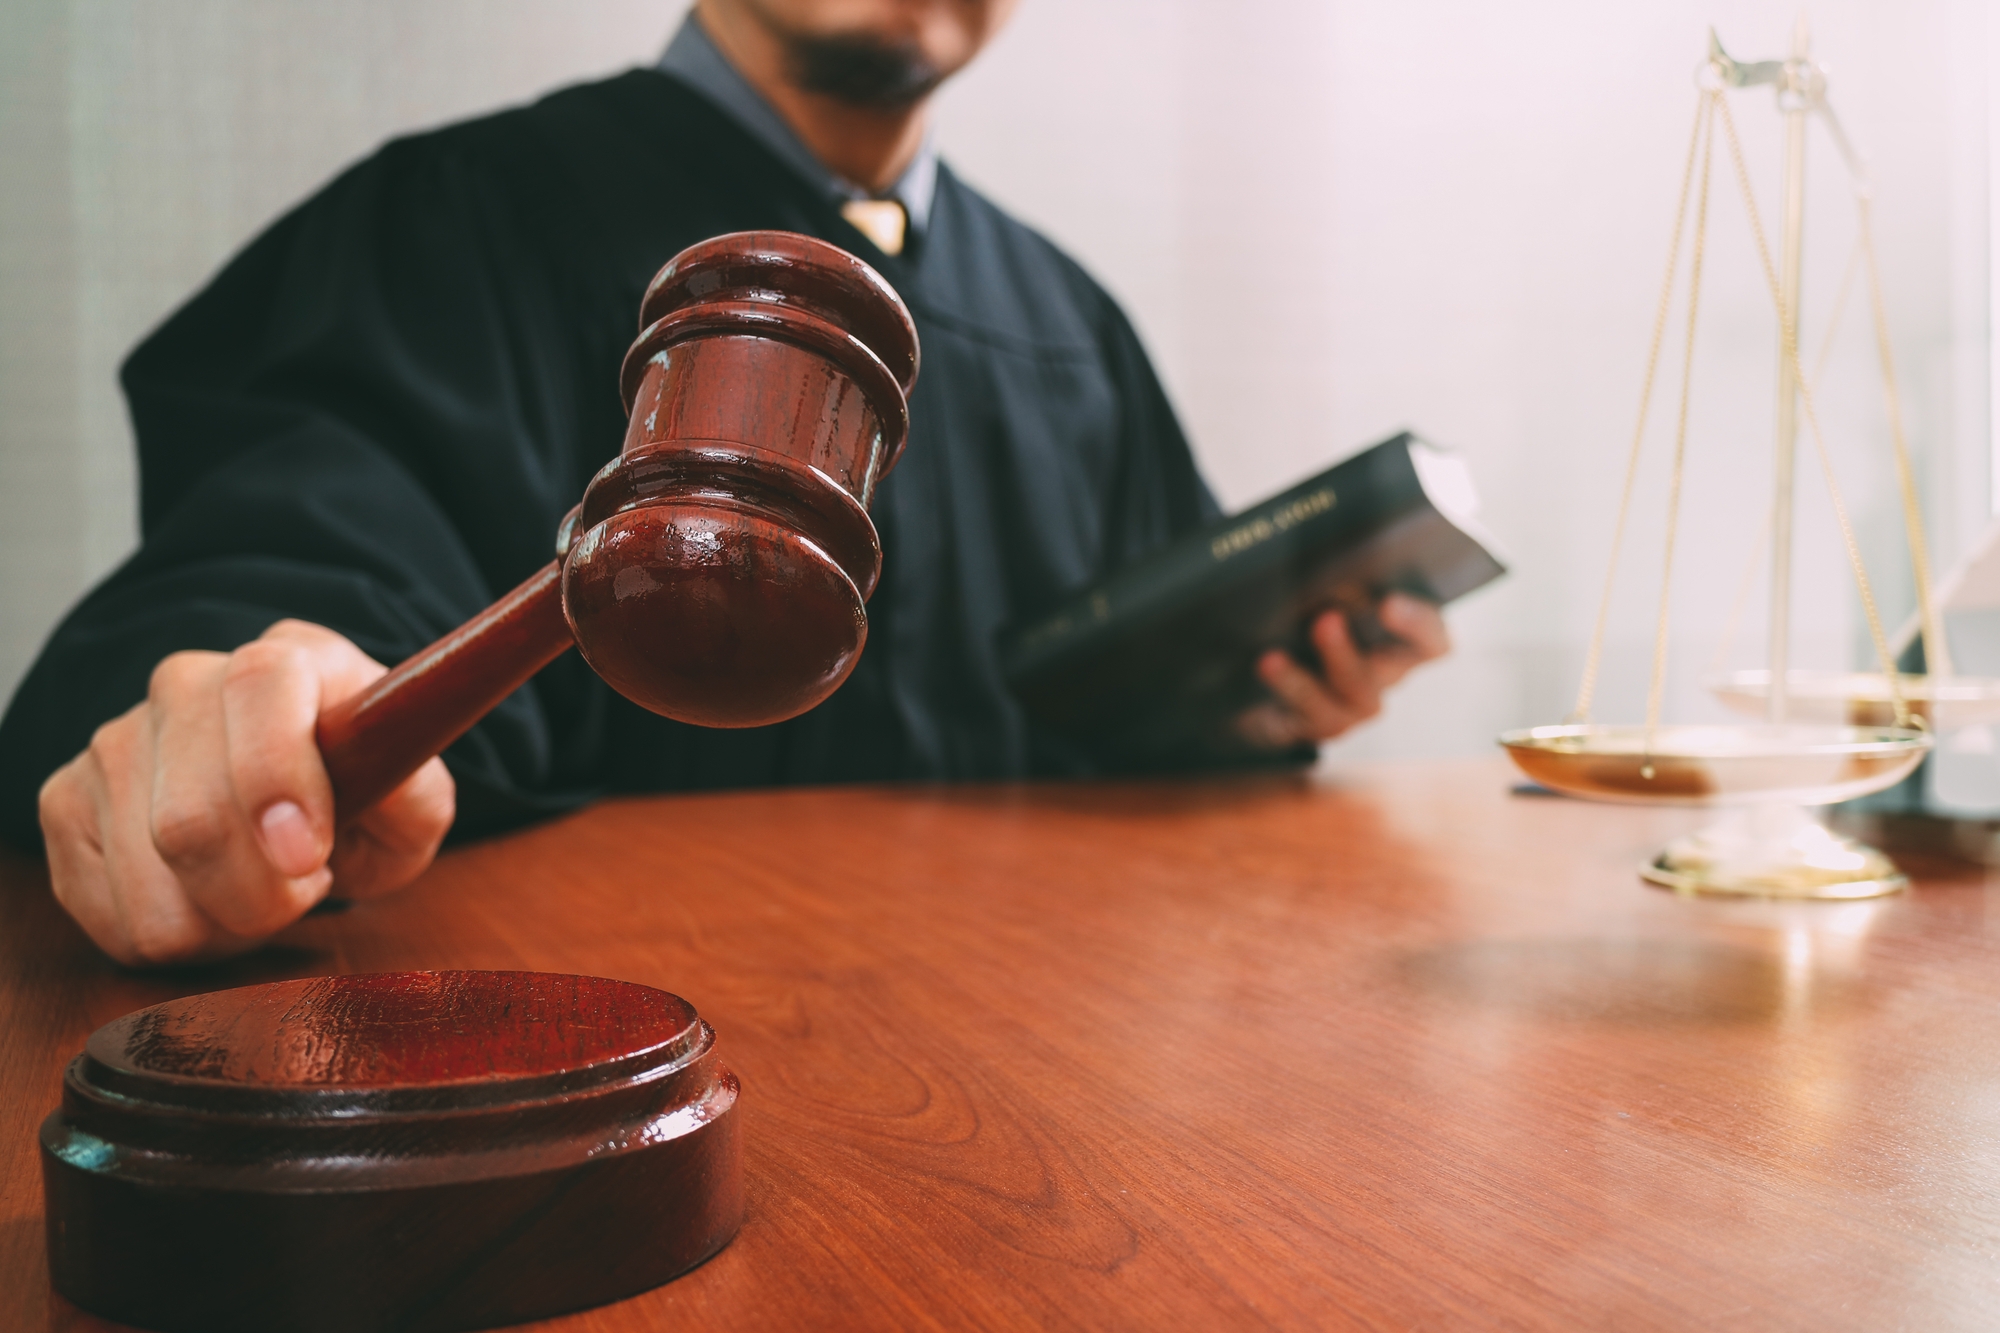 Суды поддержали заказчика по Закону № 223-ФЗ в споре о незаконных условиях документации